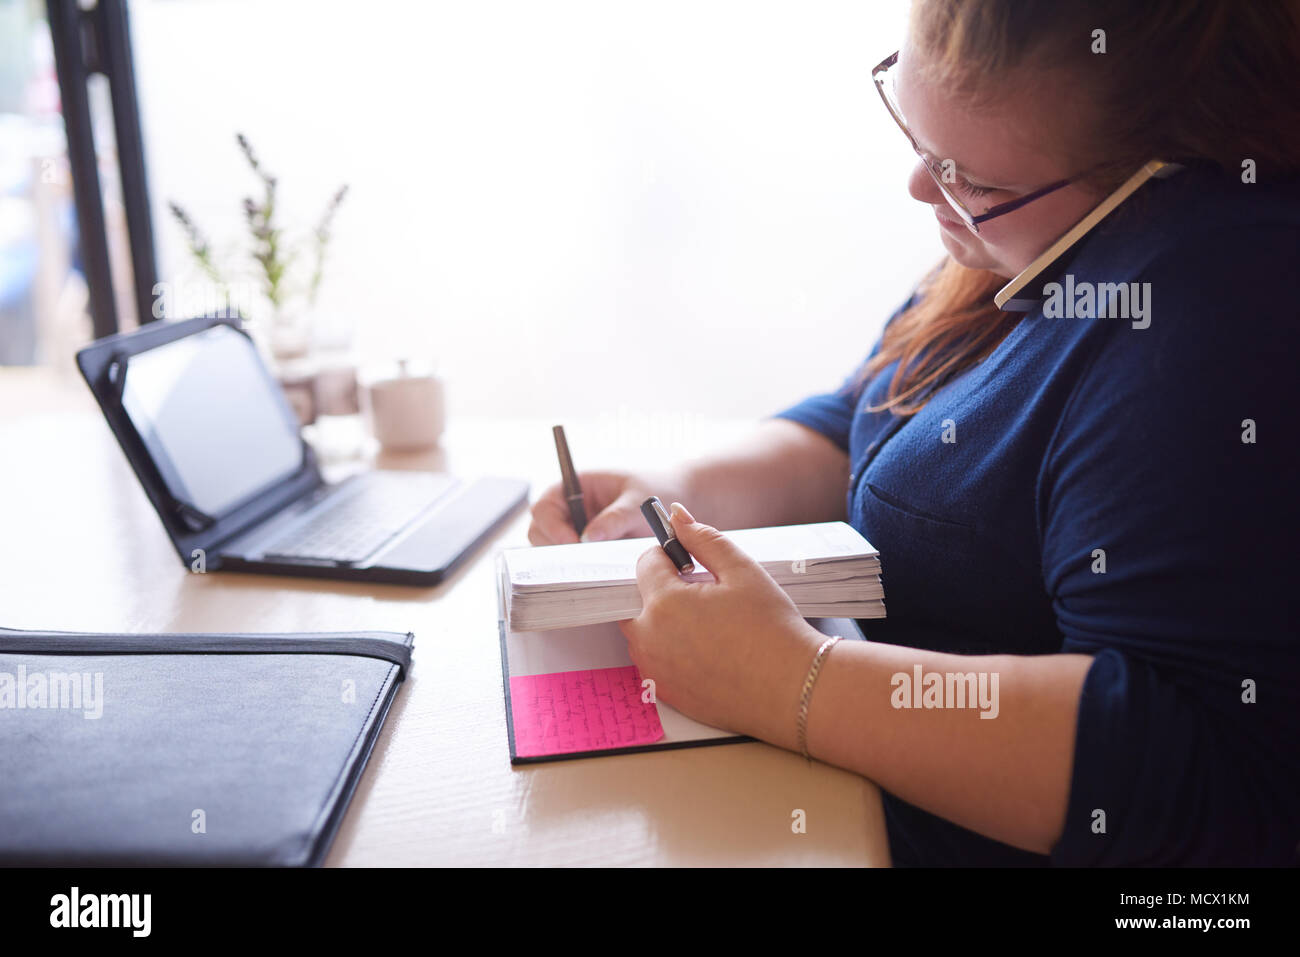 Mäßig übergewichtig kaukasische Frau an ihrem Schreibtisch beschäftigt Multitasking gesetzt, während Sie in Ihrem Notebook und Gespräche auf Ihrem Handy schreibt, die zwischen Kopf und Schulter eingeklemmt wird. Stockfoto